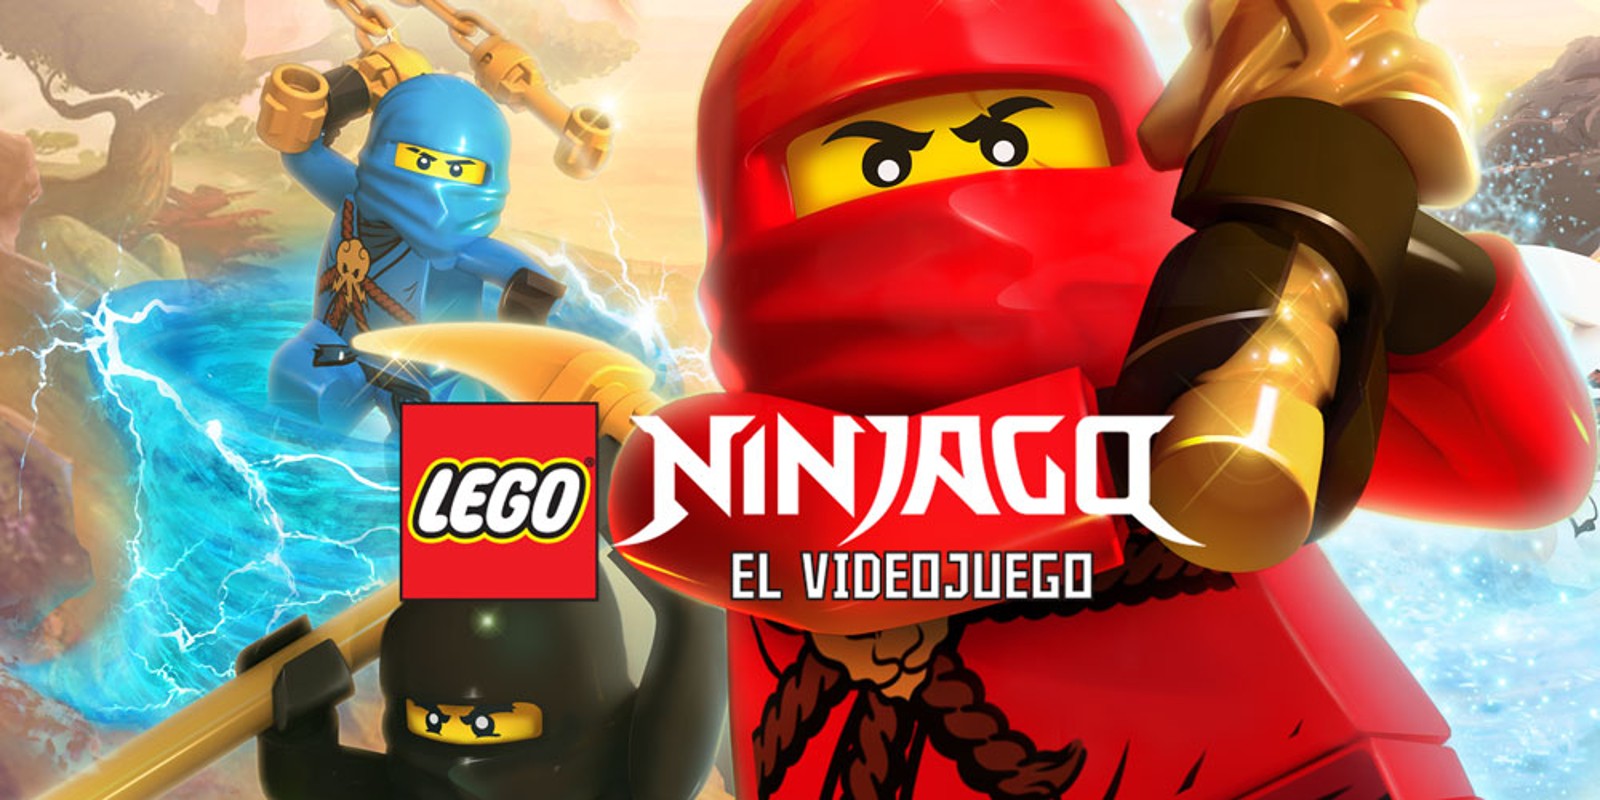 LEGO NINJAGO: EL VIDEOJUEGO